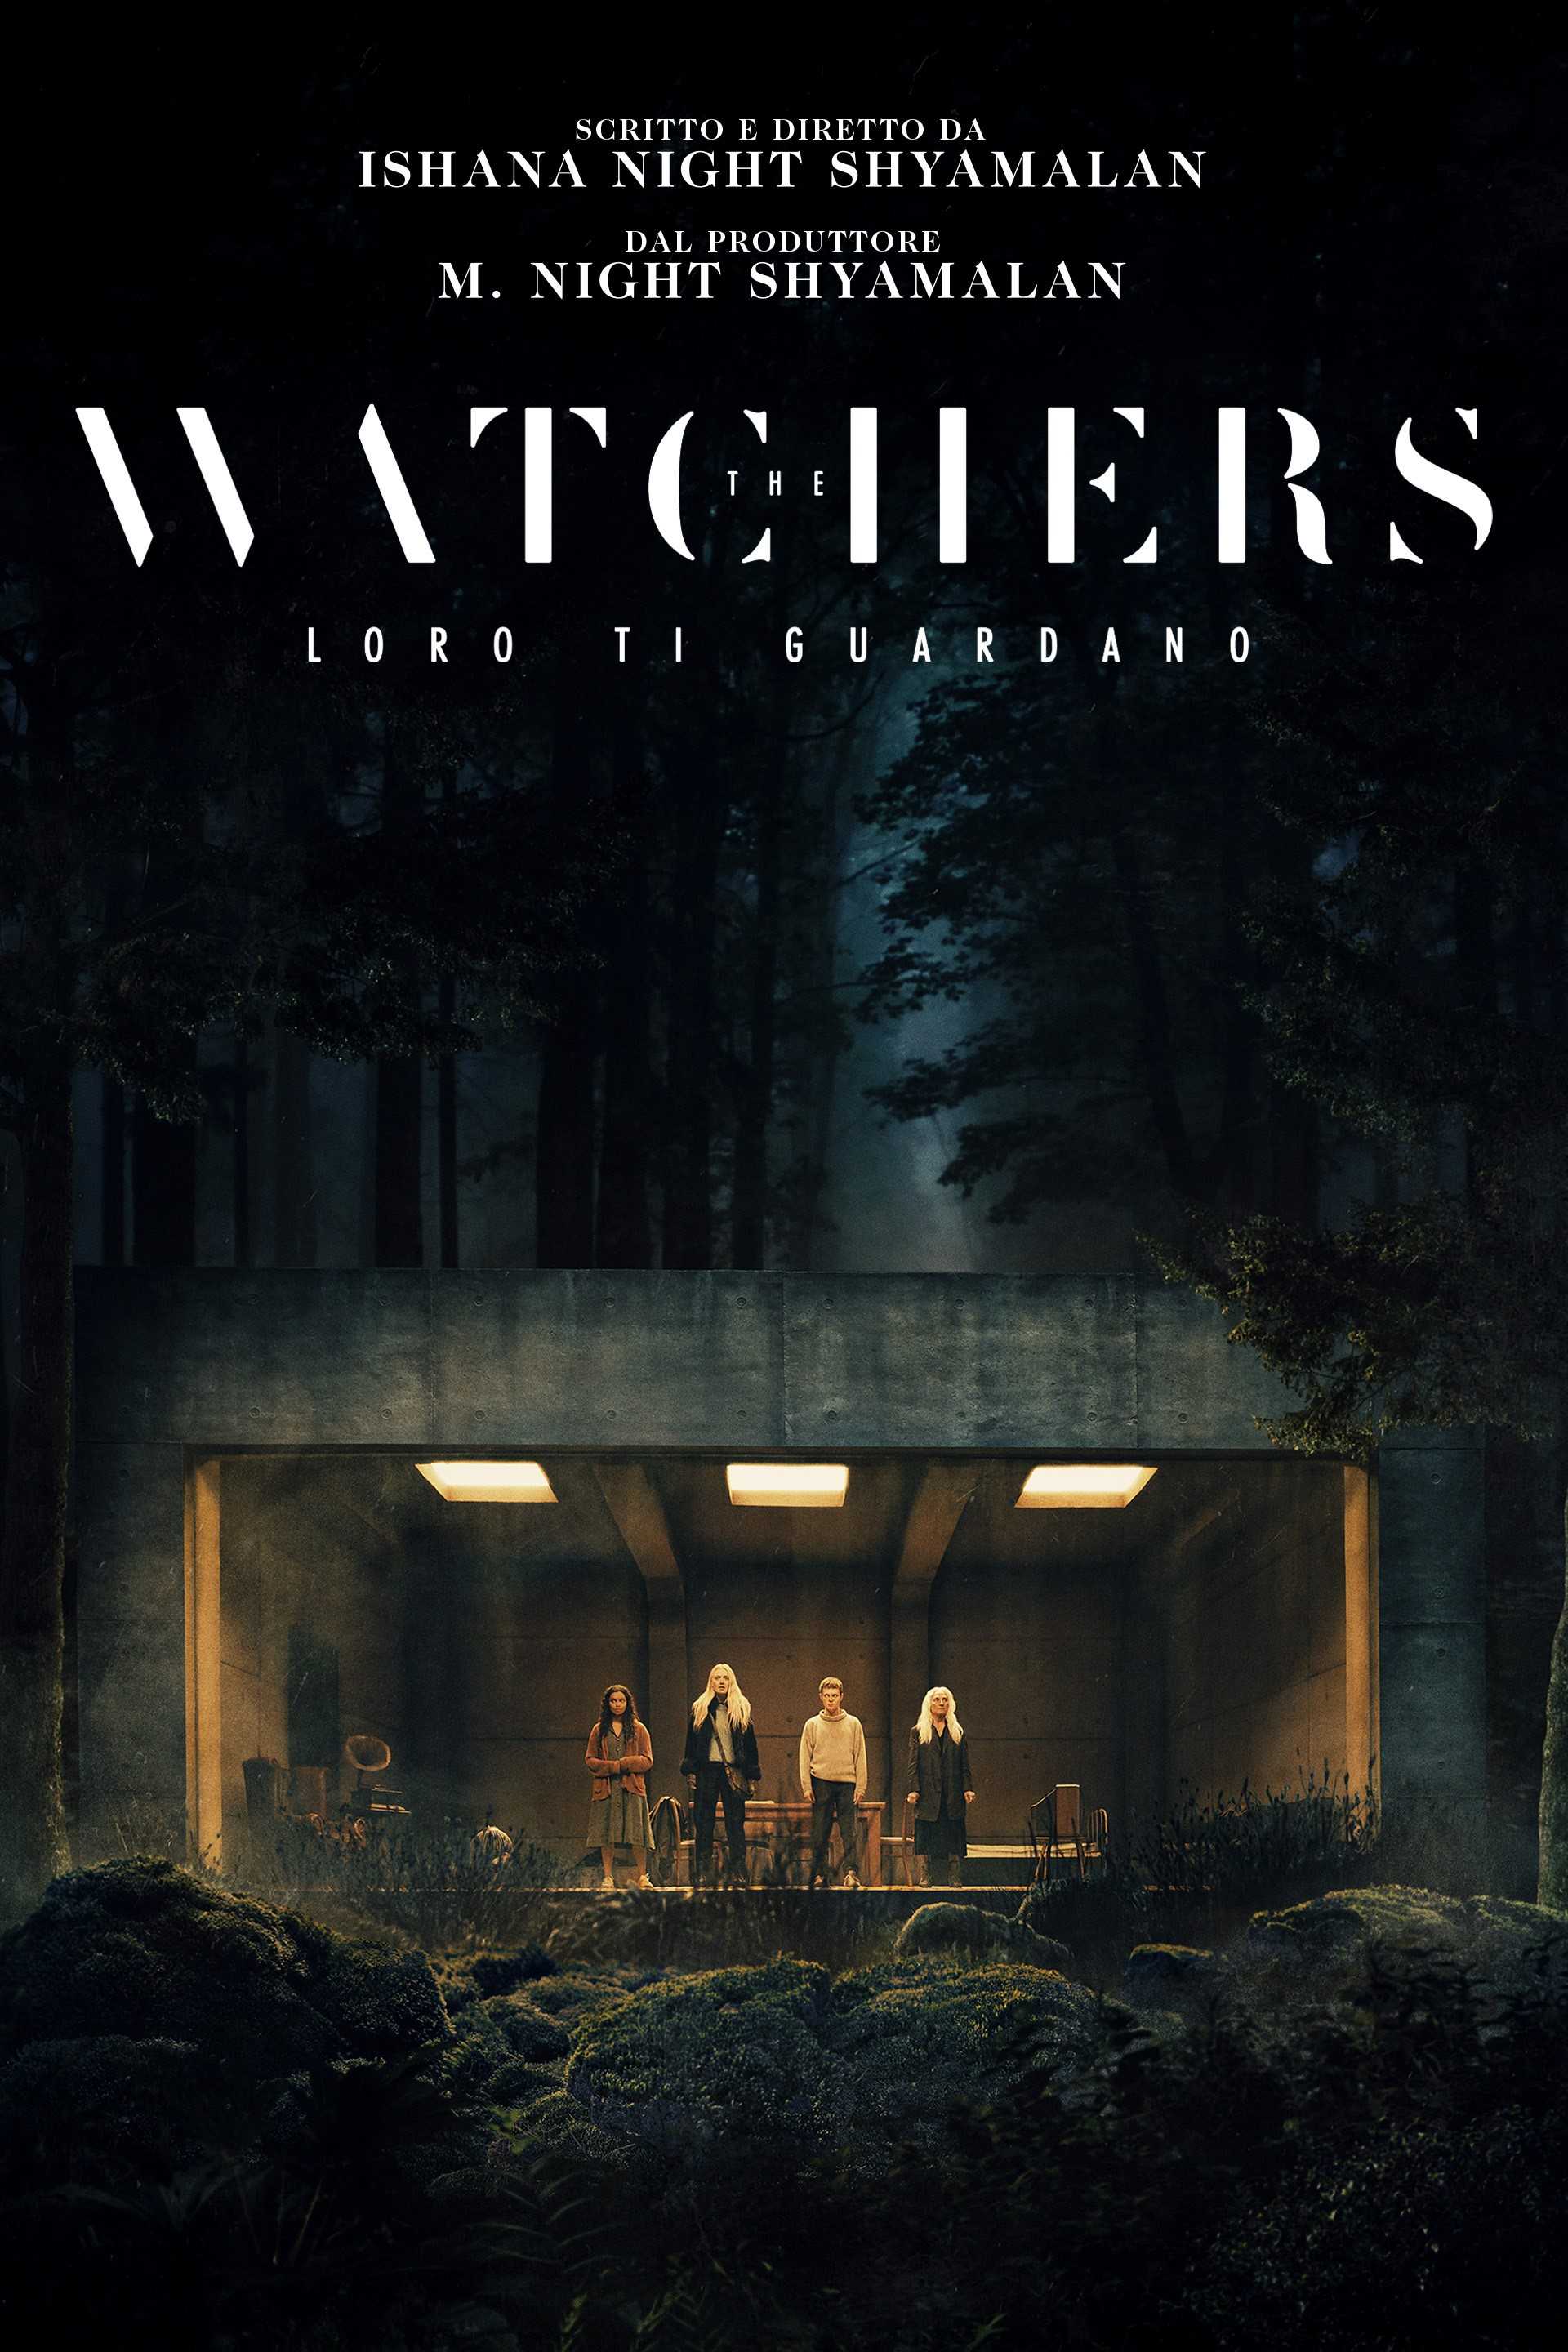 The Watchers - Loro ti guardano in streaming